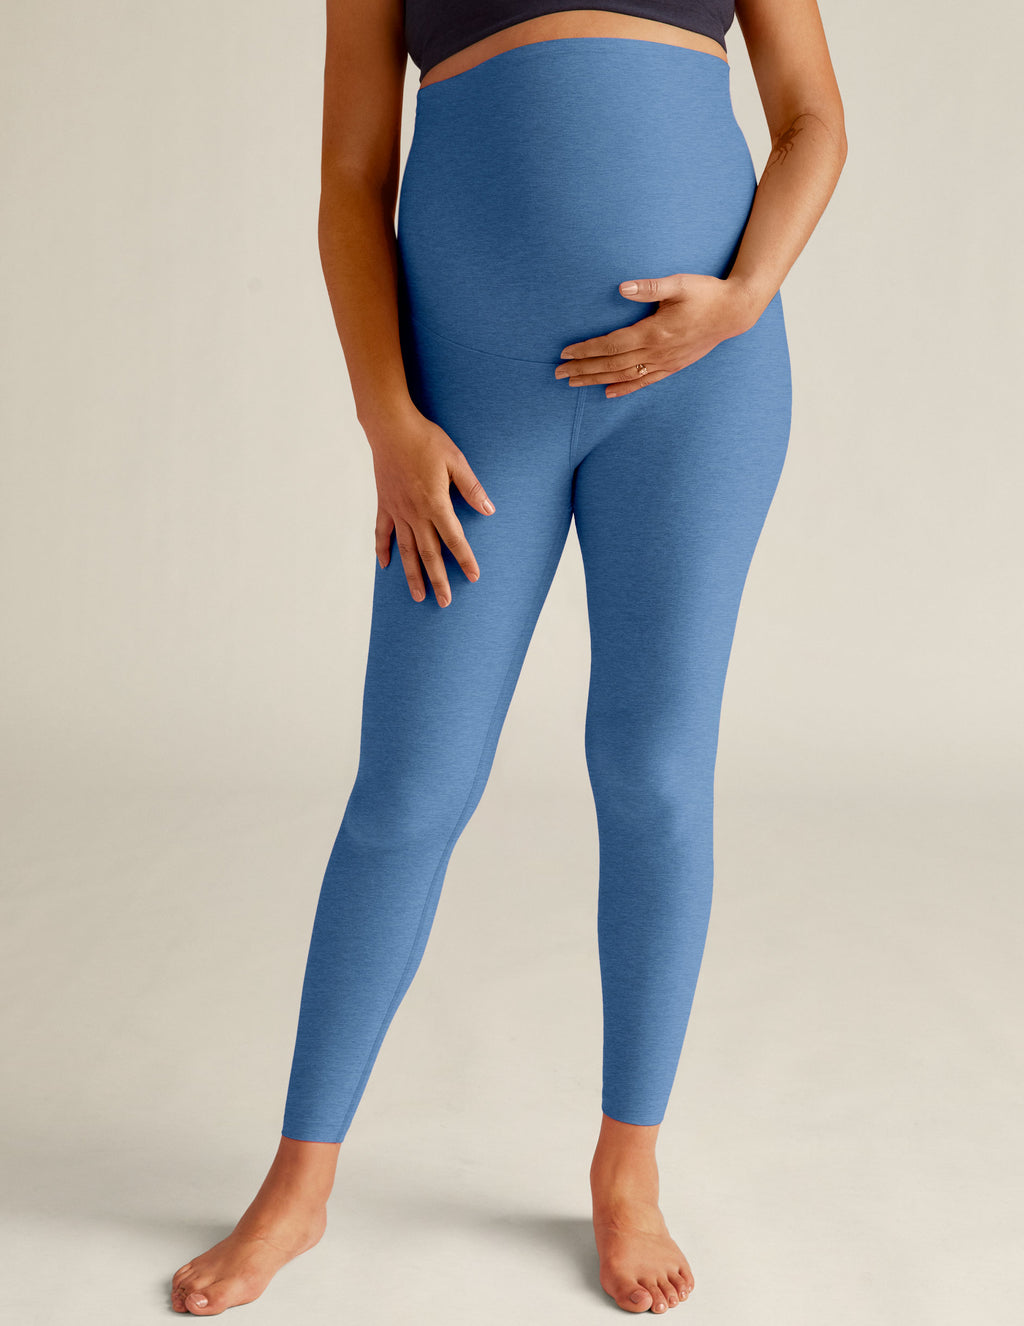 VBARHMQRT Flare Yoga Pants Tall Maternity Print Tights Leggings Control  Yoga Sport Leggings High Waisted Leggings Workout Leggings for Women Tummy